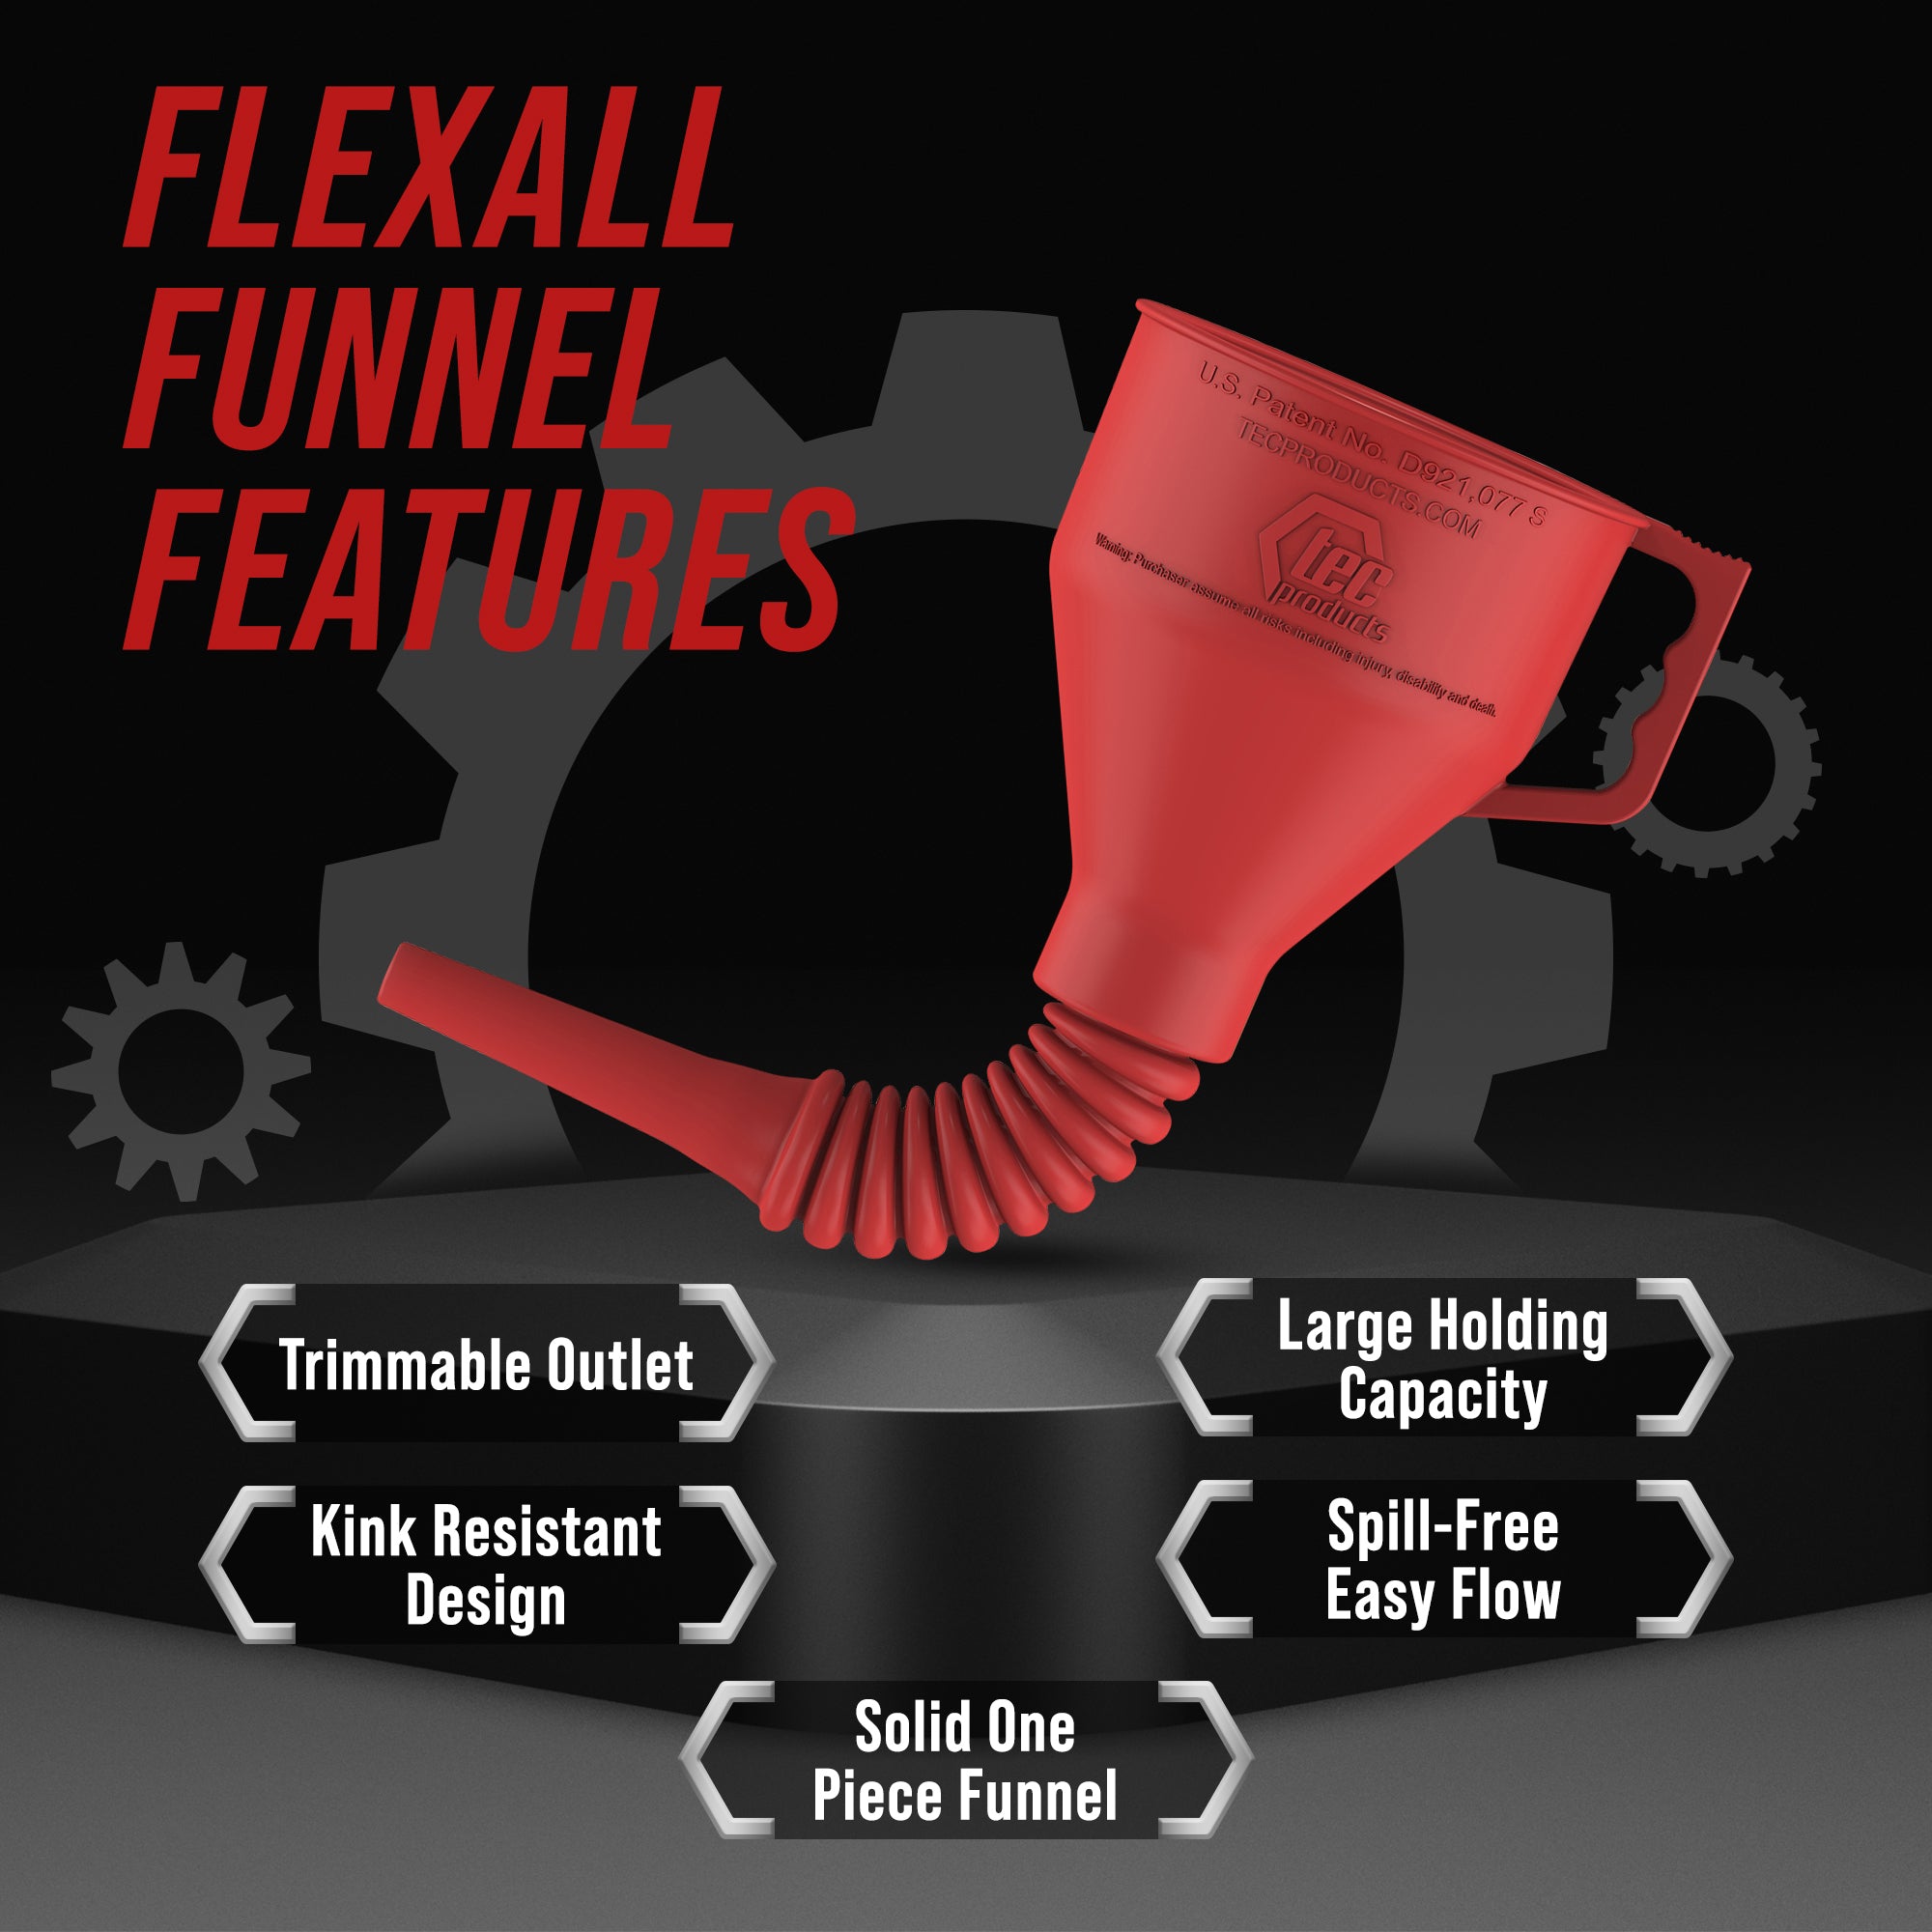 FlexAll Funnel